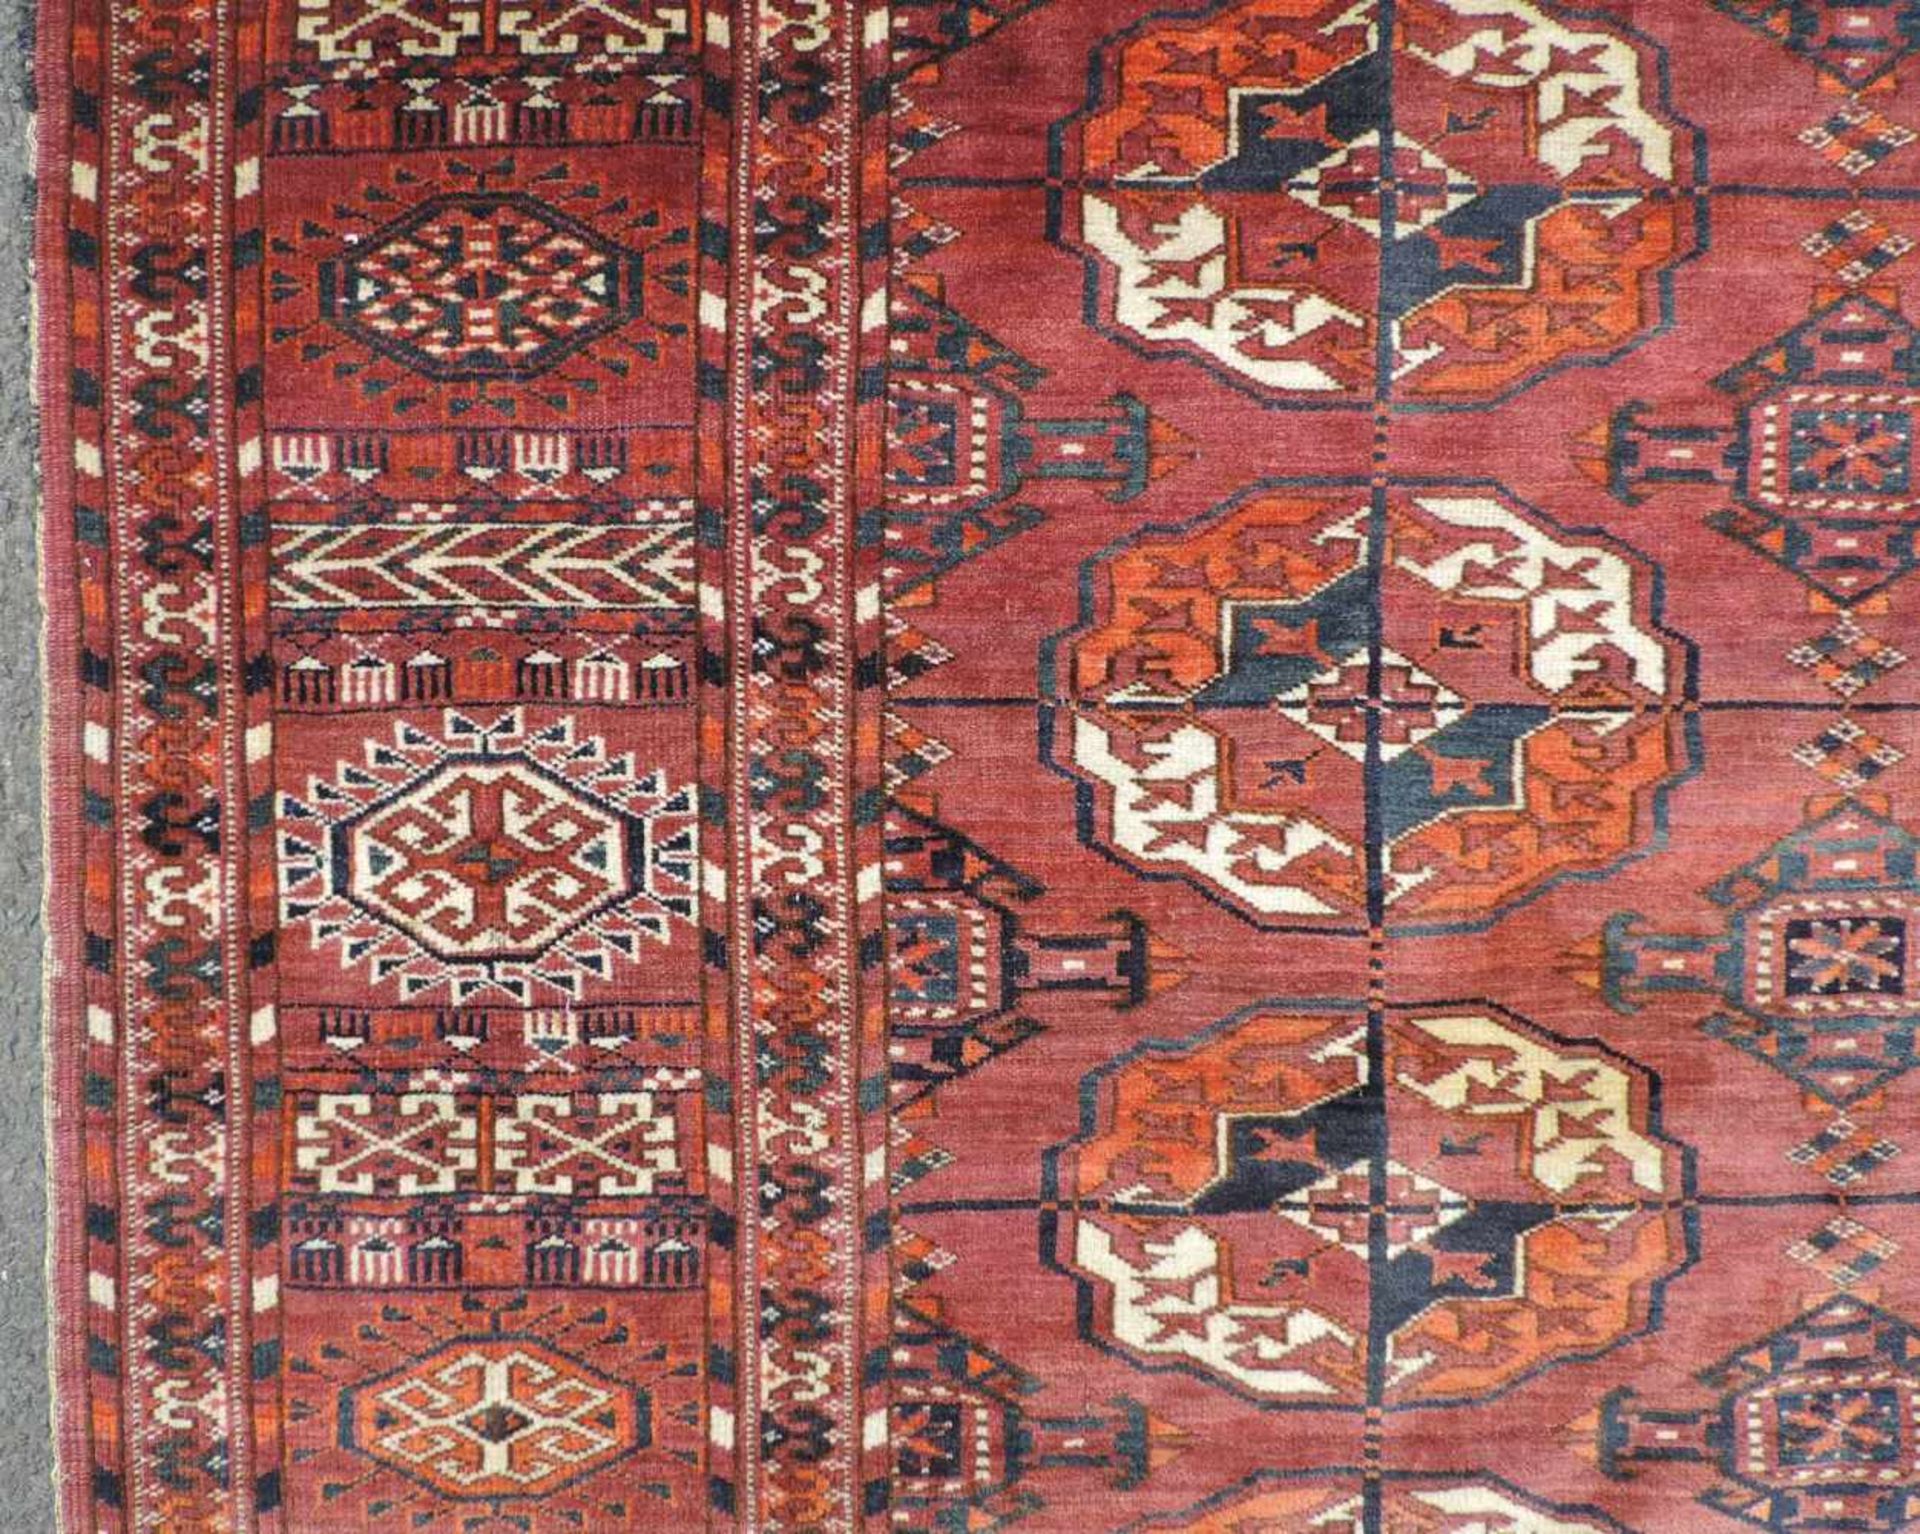 Tekke Hauptteppich. Turkmenistan, 2. Hälfte 19. Jahrhundert. Wohl Göklan Wüste. 282 cm x 218 cm. - Bild 8 aus 13